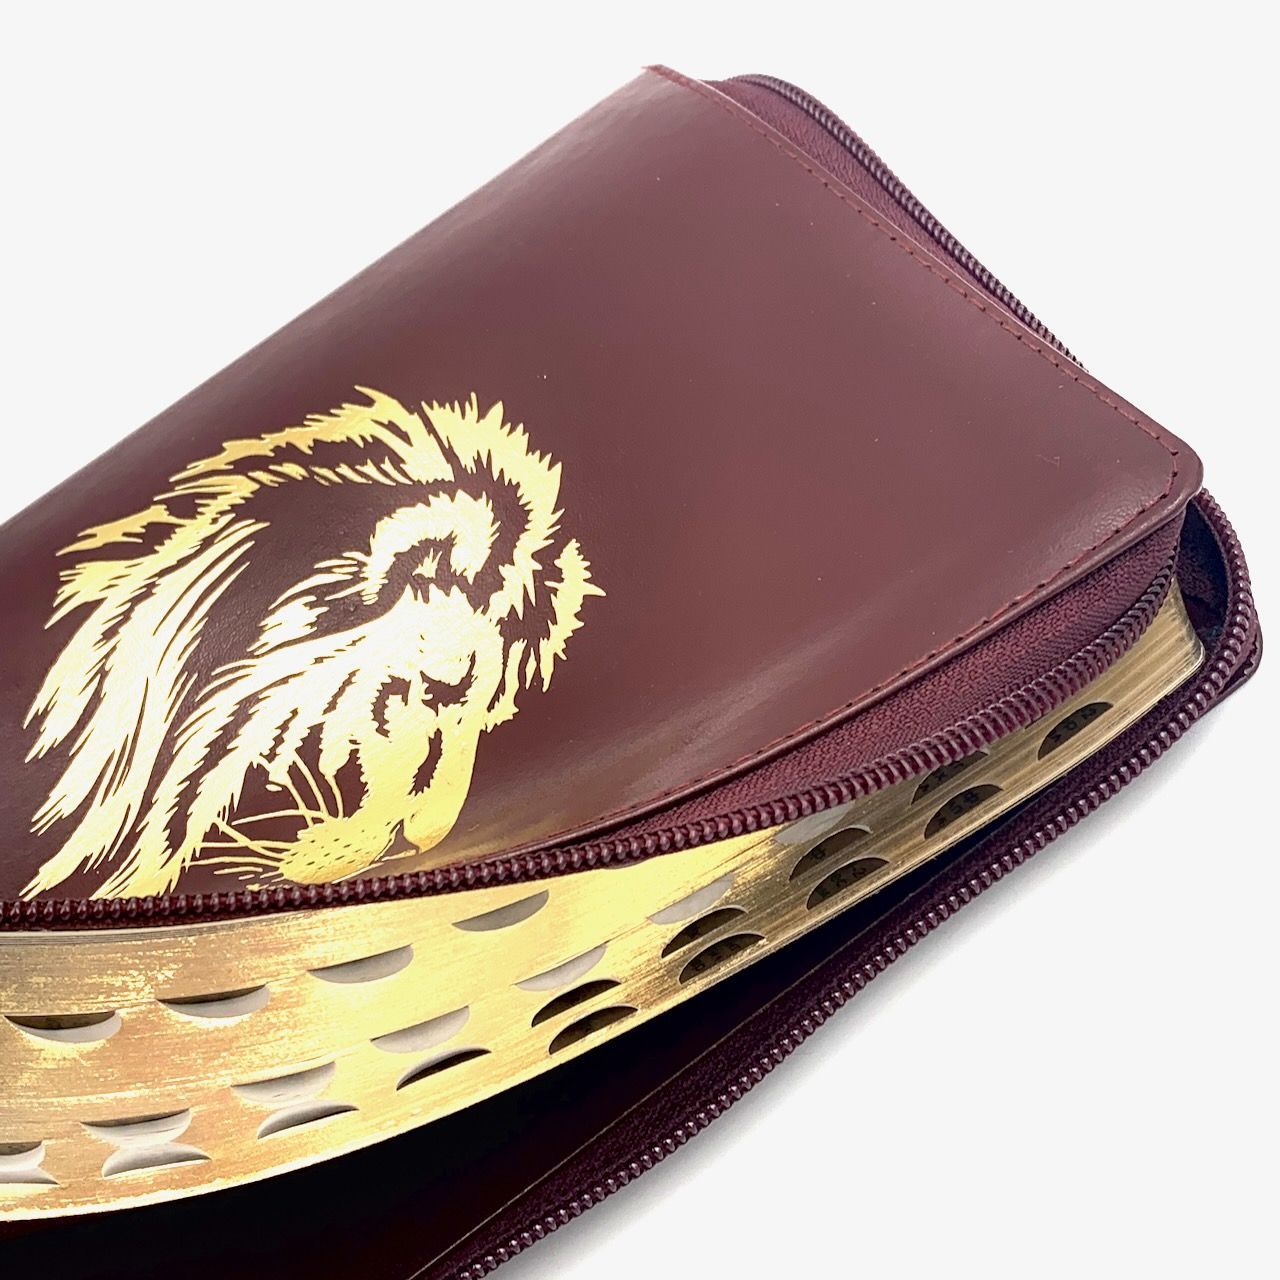 Библия 055zti код 23055-34 дизайн "золотой лев", кожаный переплет на молнии с индексами, цвет бордо металлик, средний формат, 143*220 мм